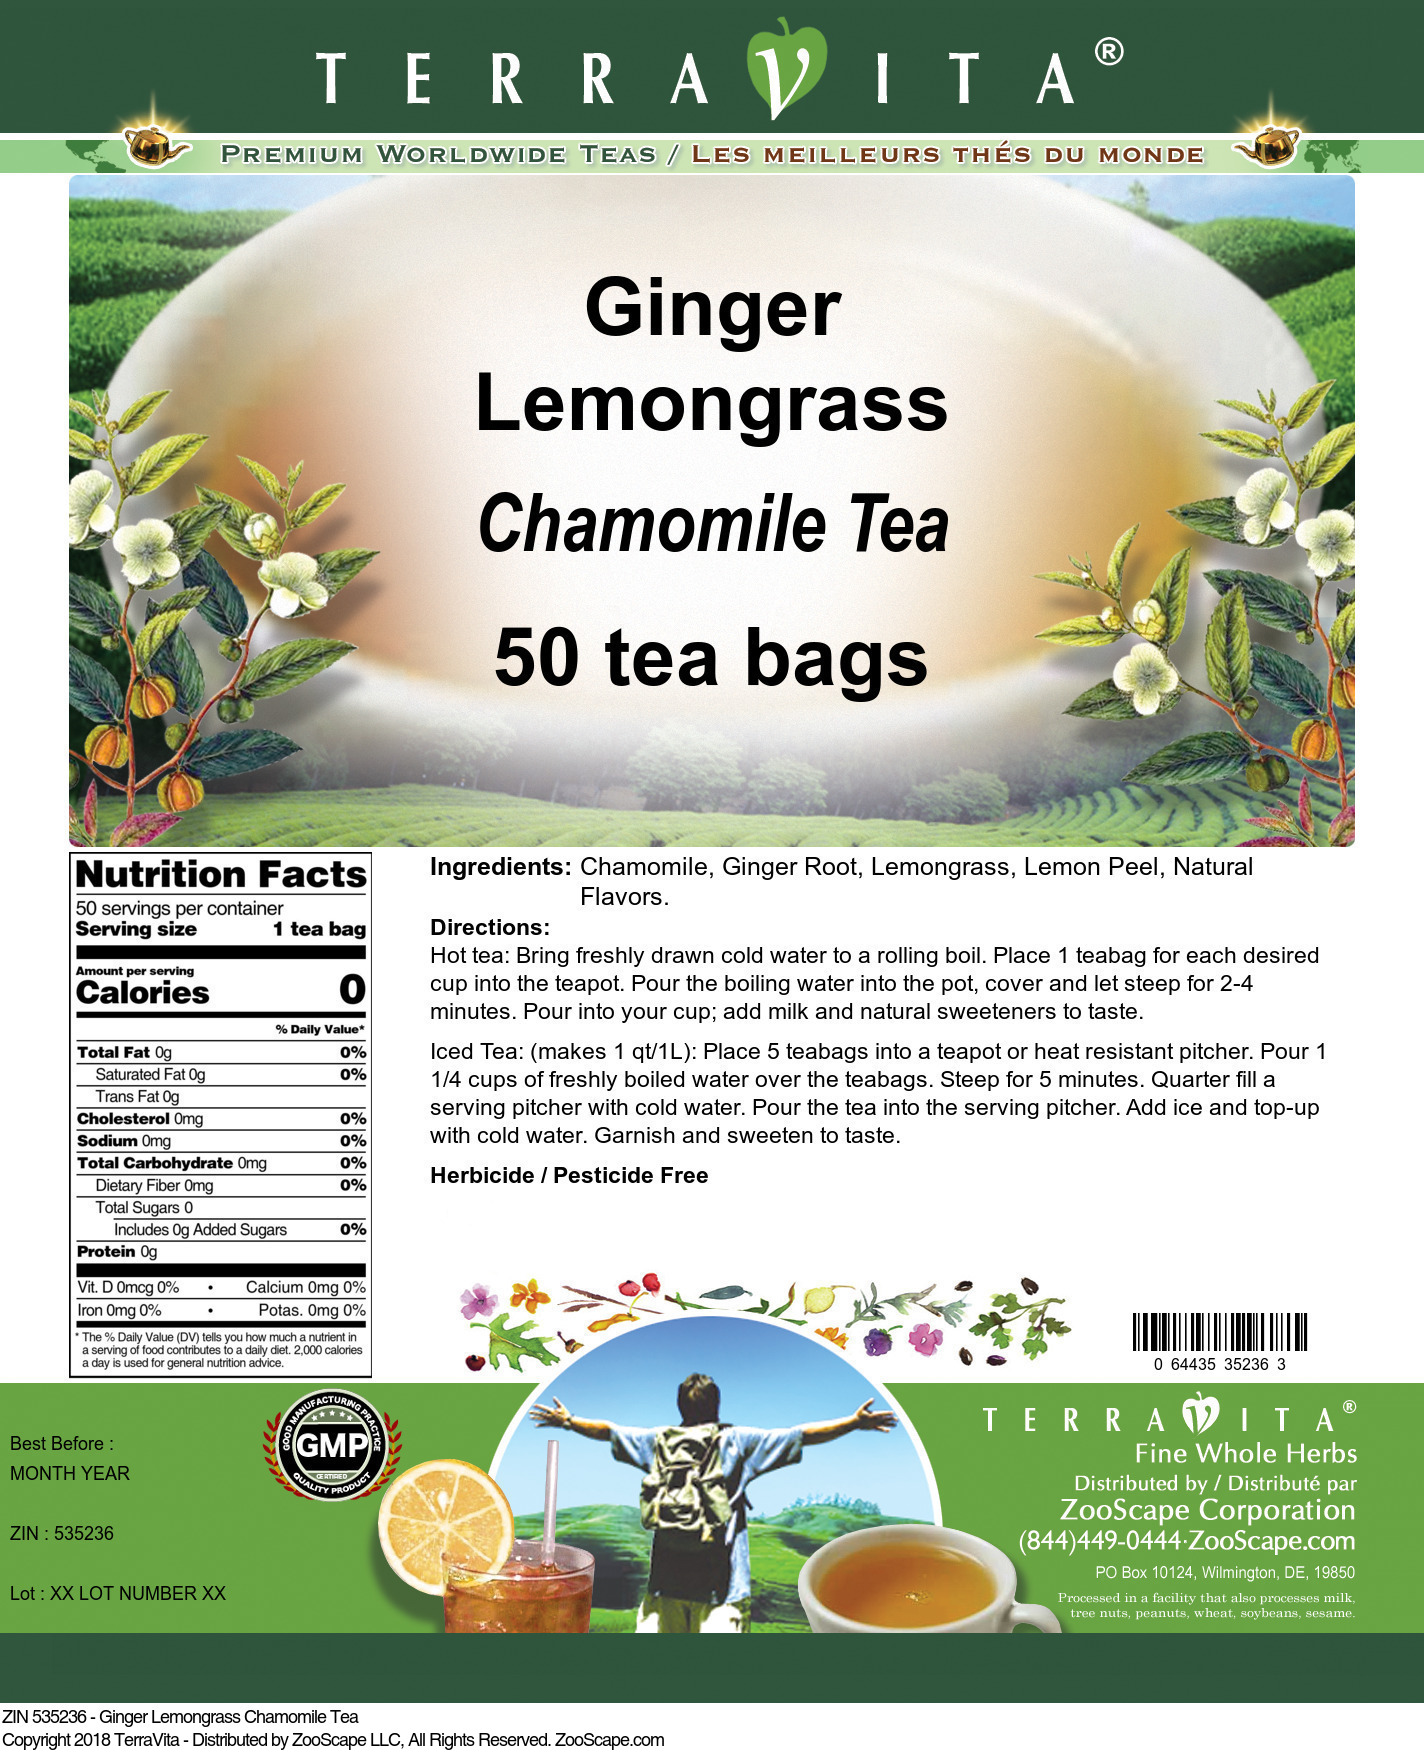 Ginger Lemongrass Chamomile Tea - Label